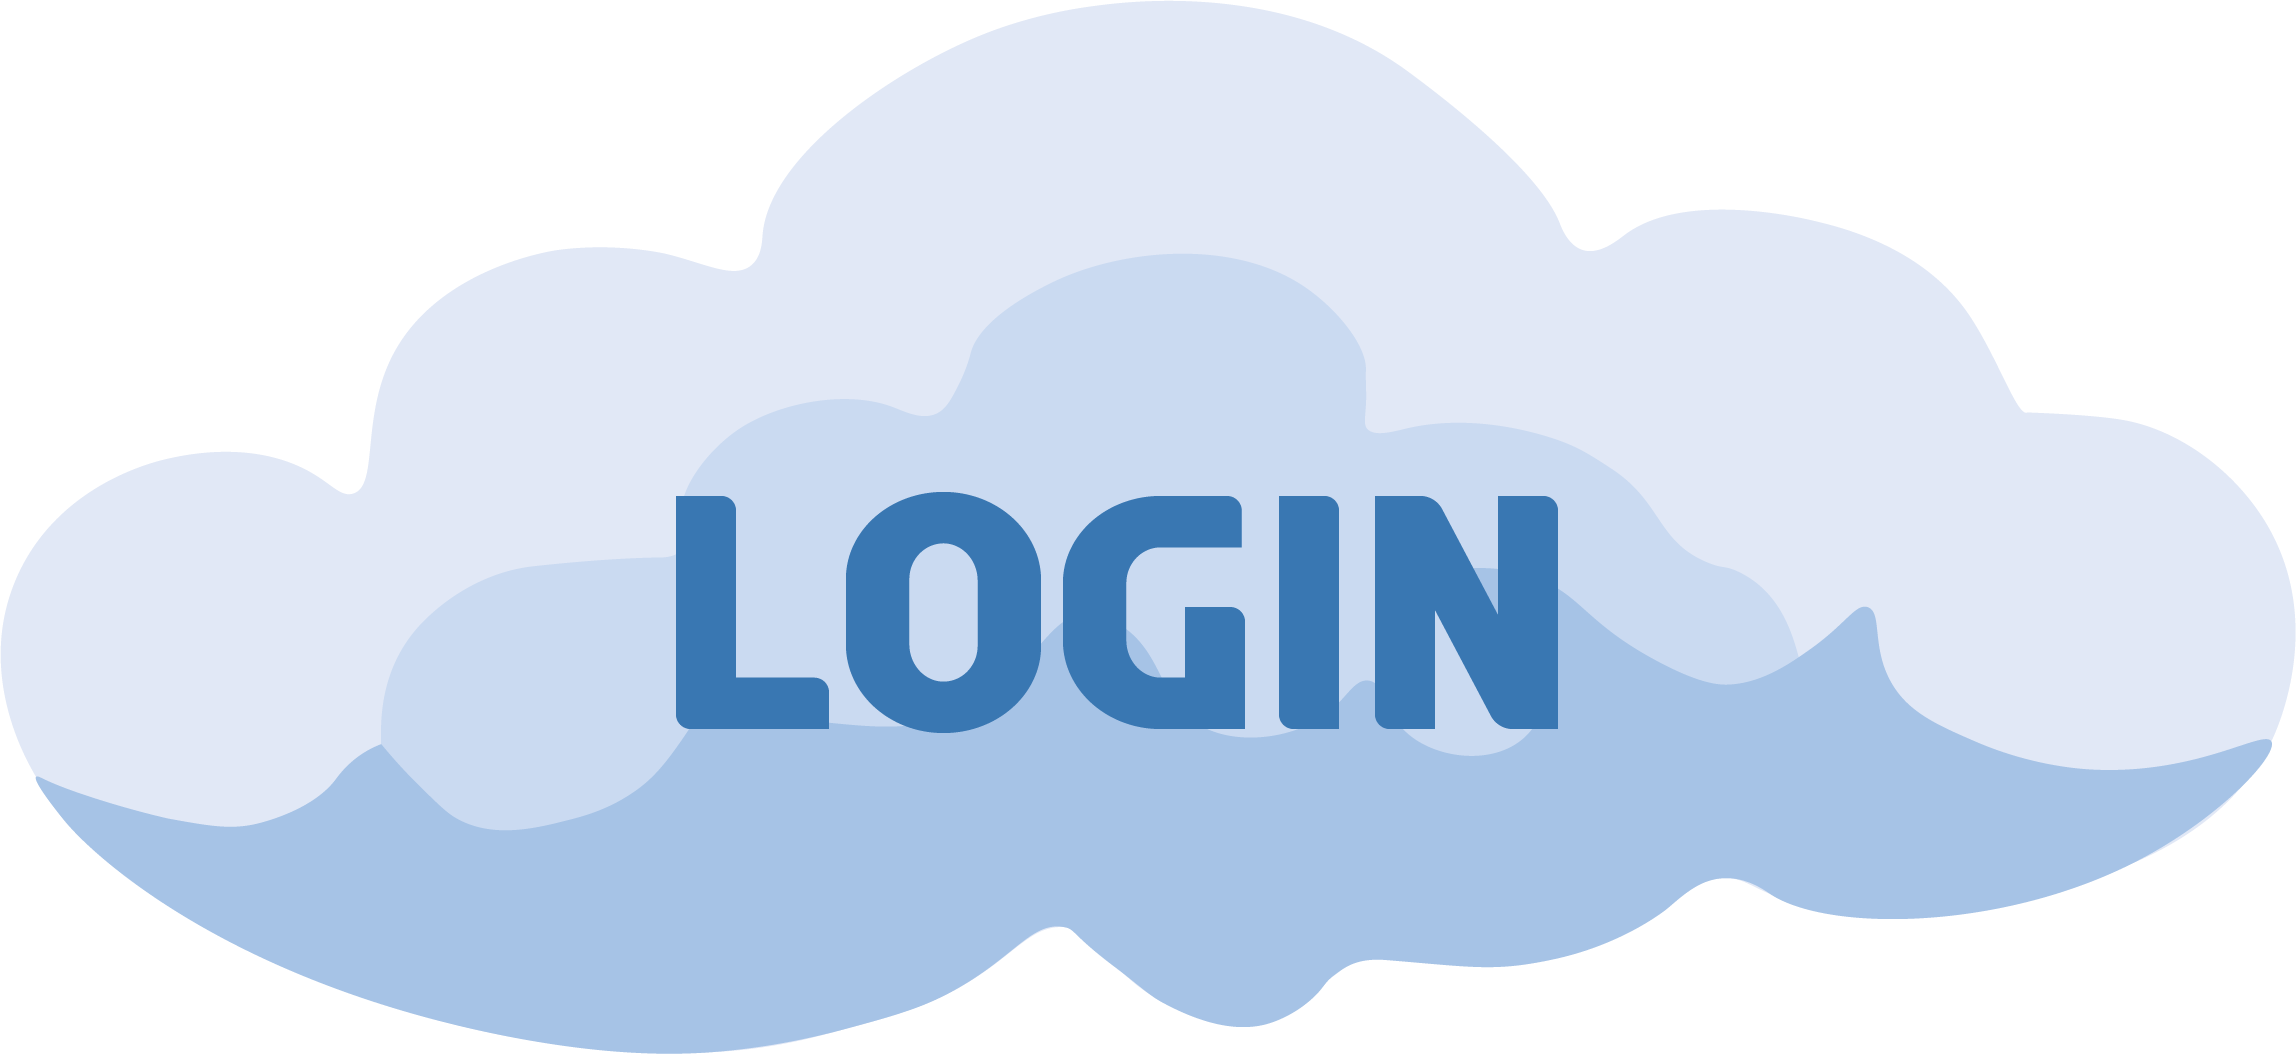 login cloud